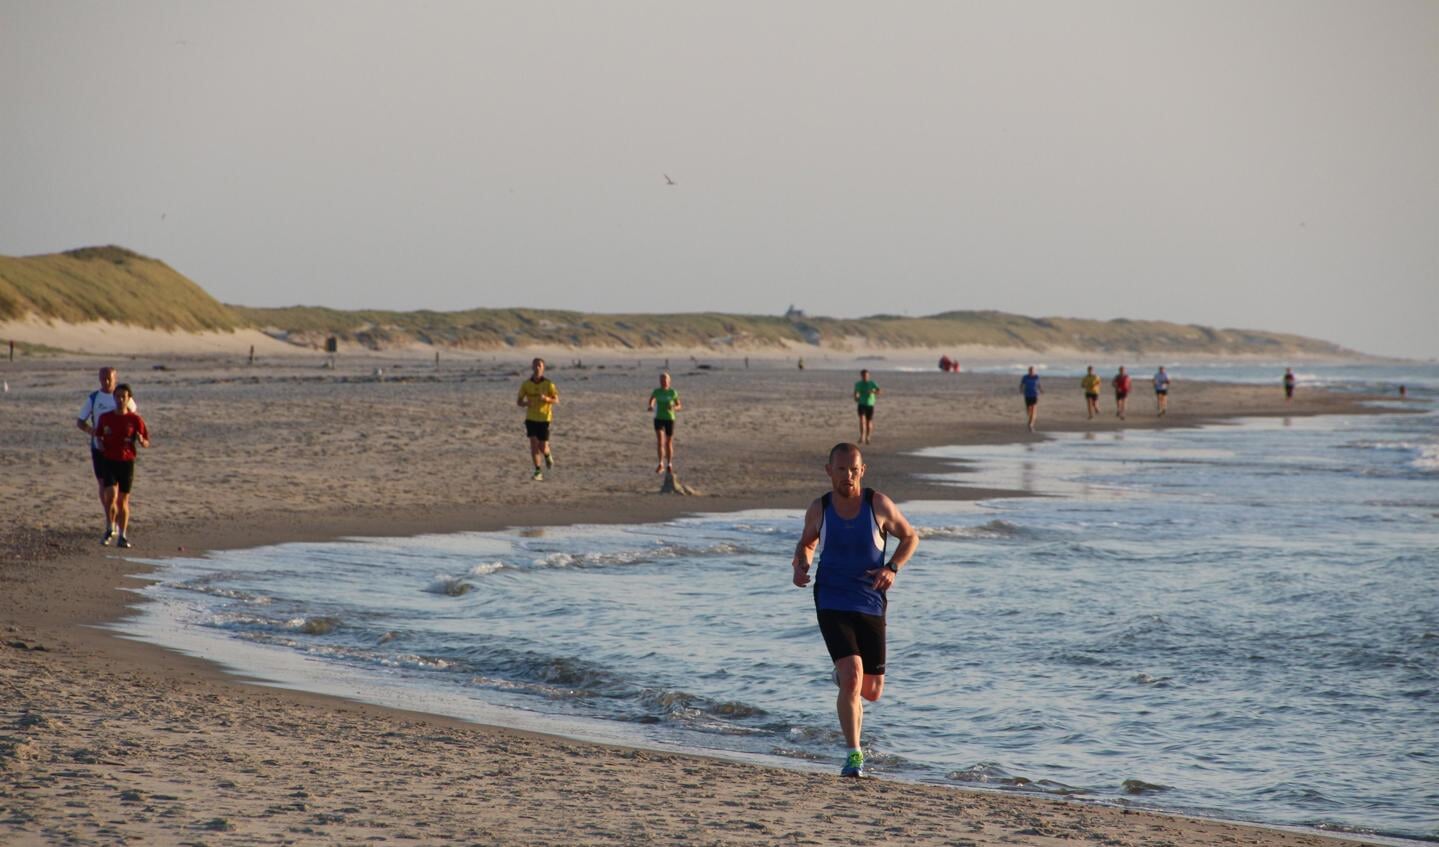 65 deelnemers doen woensdag mee aan de laatste Krimstrandloop van het seizoen, georganiseerd door Atletiekvereniging Texel.